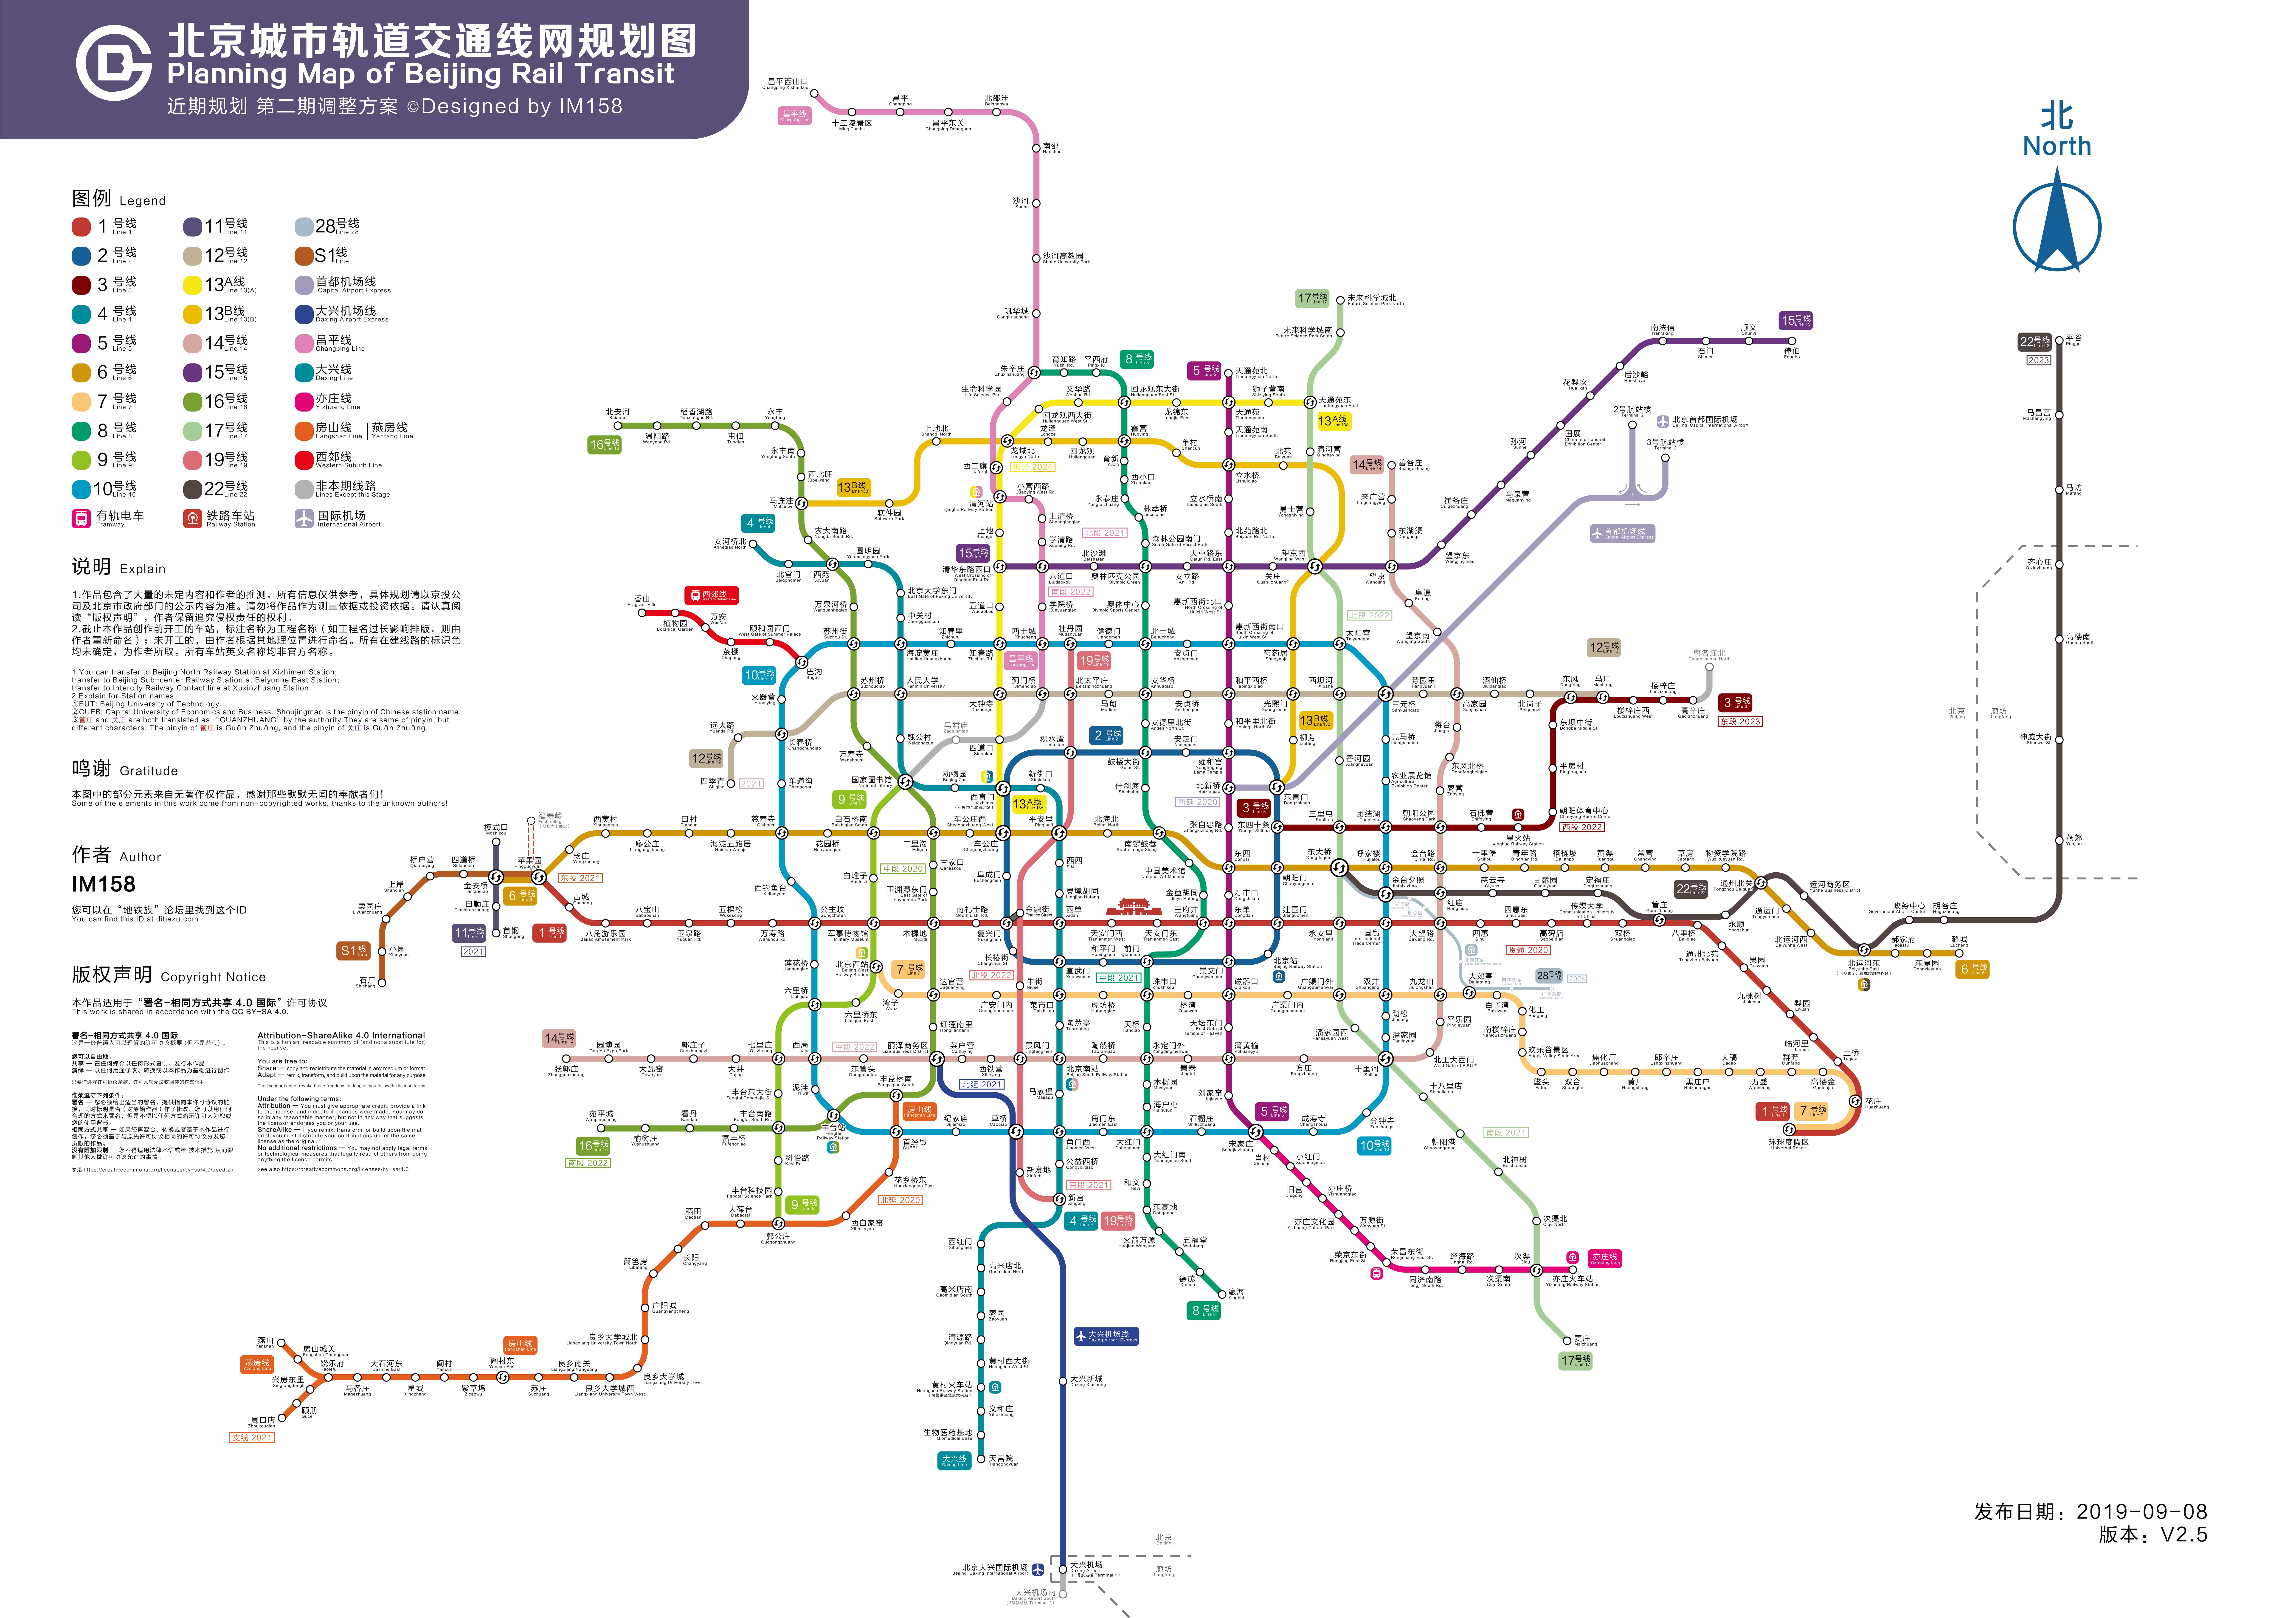 北京城市轨道交通规划图第二期调整方案